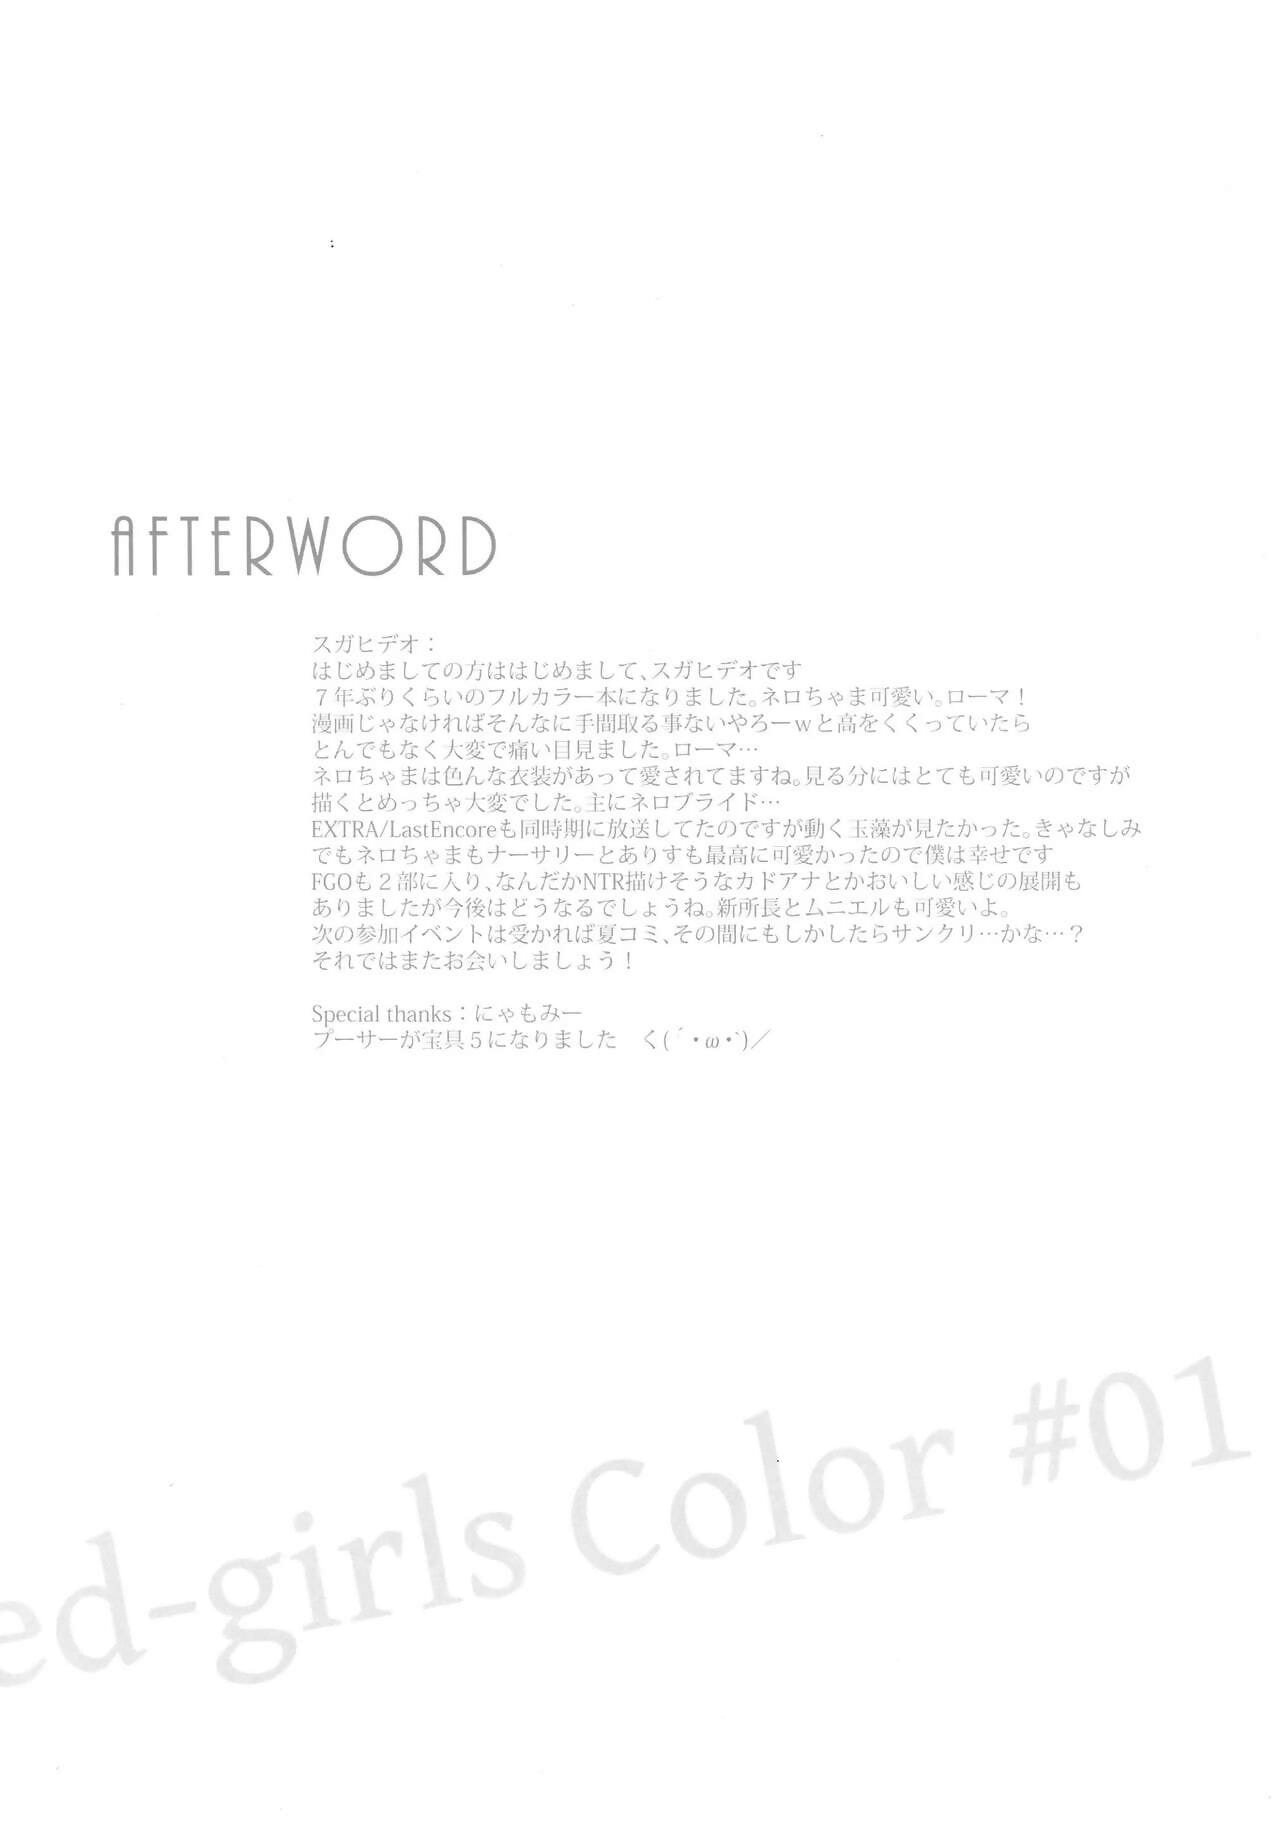 comic1☆13 işaretli iki suga Hideo işaretli kızlar renk #01 Tam renk ban + monokrom ban set fate/grand sipariş Kore 아이카츠! 갤러리 PART 3